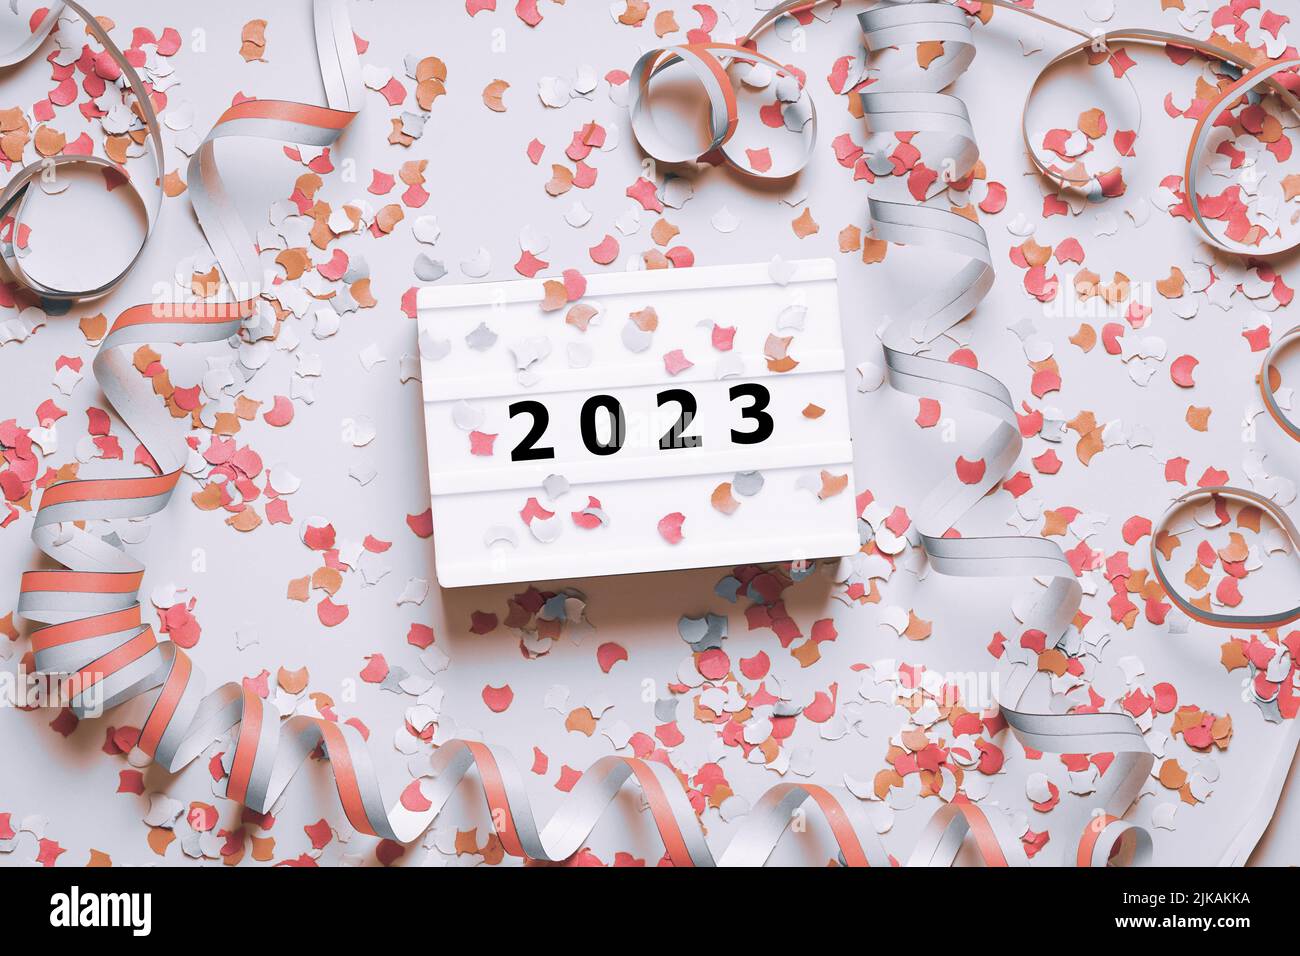 feliz año nuevo 2023 fiesta plana con confeti y streamers Foto de stock